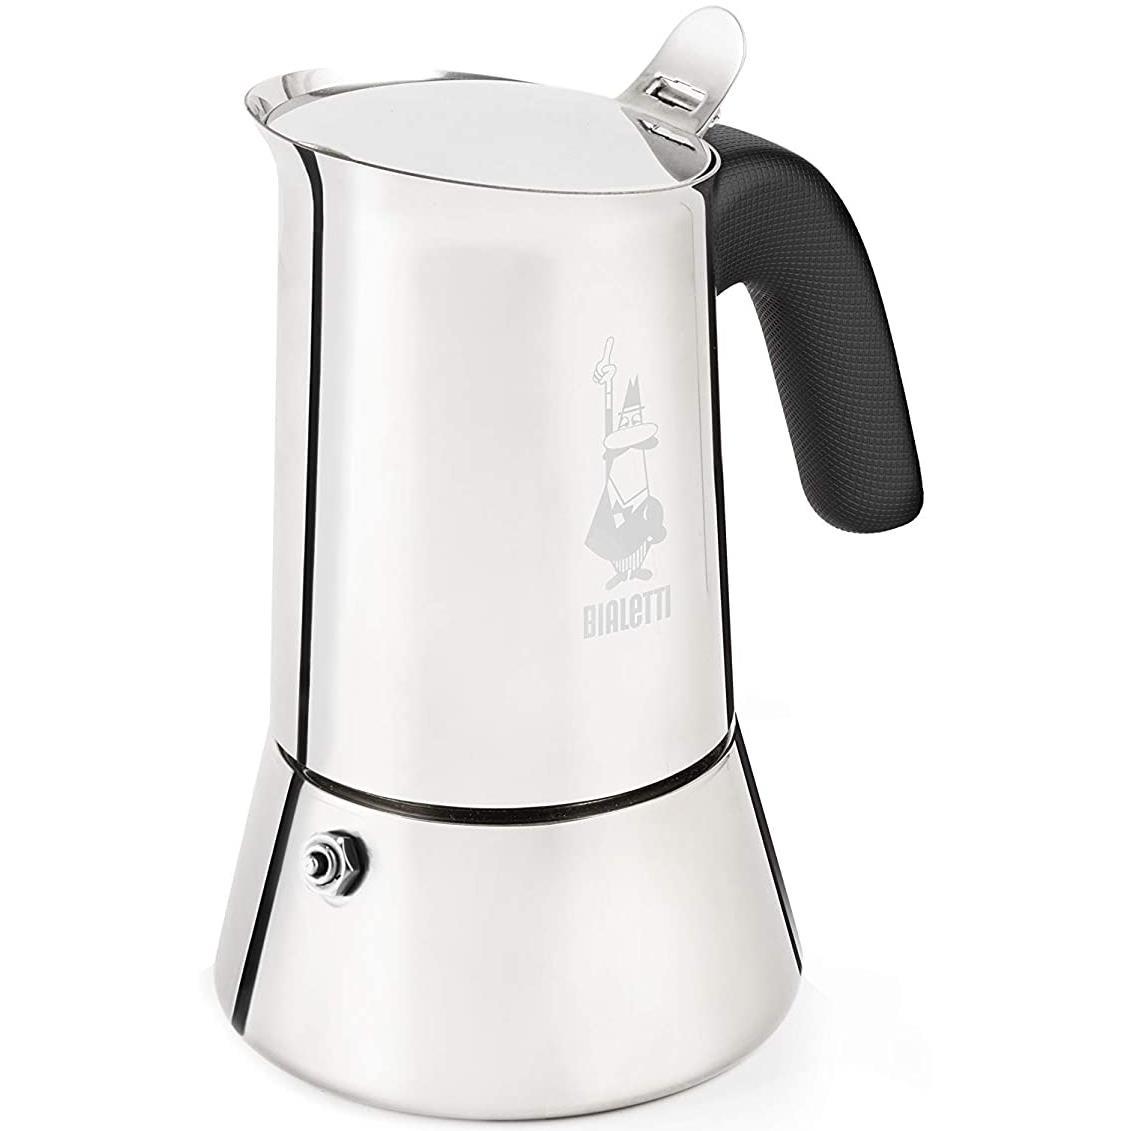 Details zu  Bialetti Venus 2 Cup Stovetop Espresso Coffee Maker, Stainless Steel - Moka Pot umfassende Bewertung